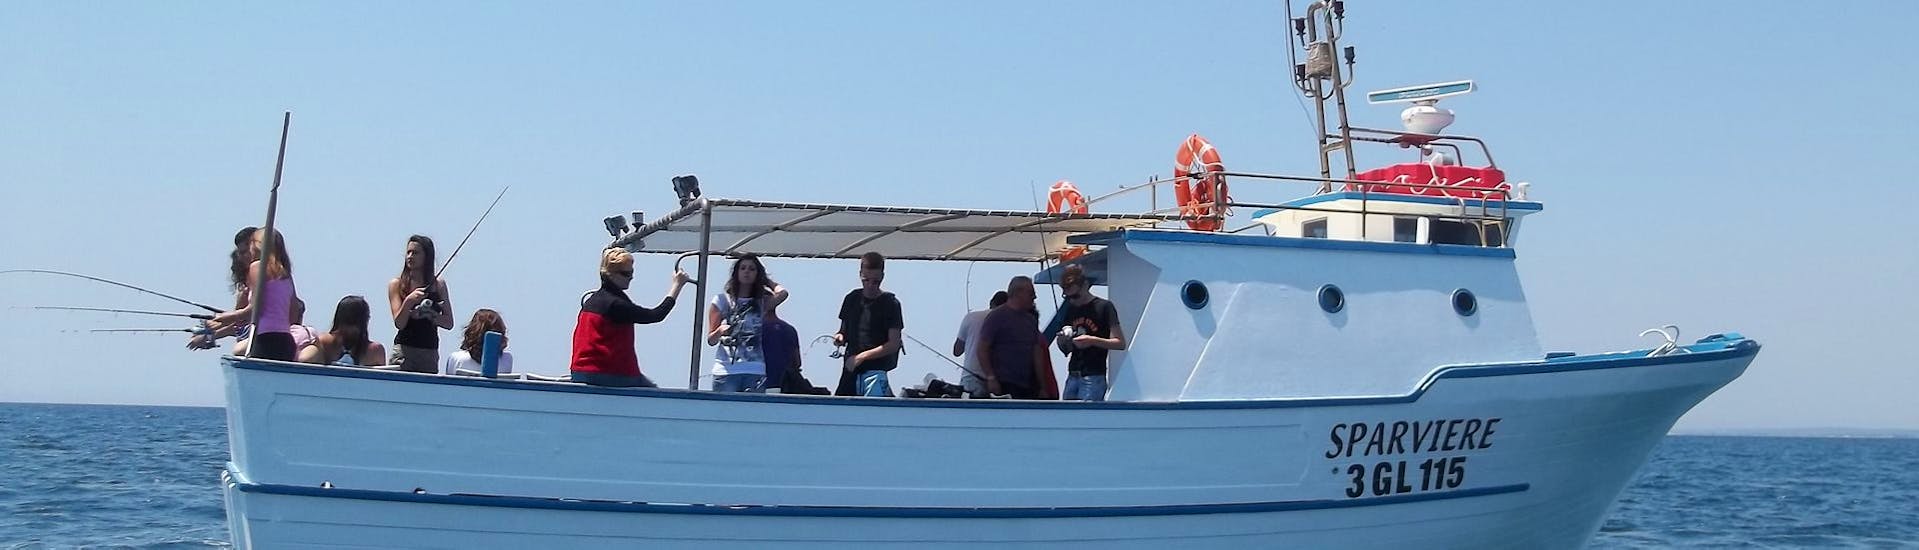 Bild eines Bootes von Pescaturismo Vivereilmare Porto Cesareo bei der Bootsfahrt in Porto Cesareo mit Angelerlebnis.